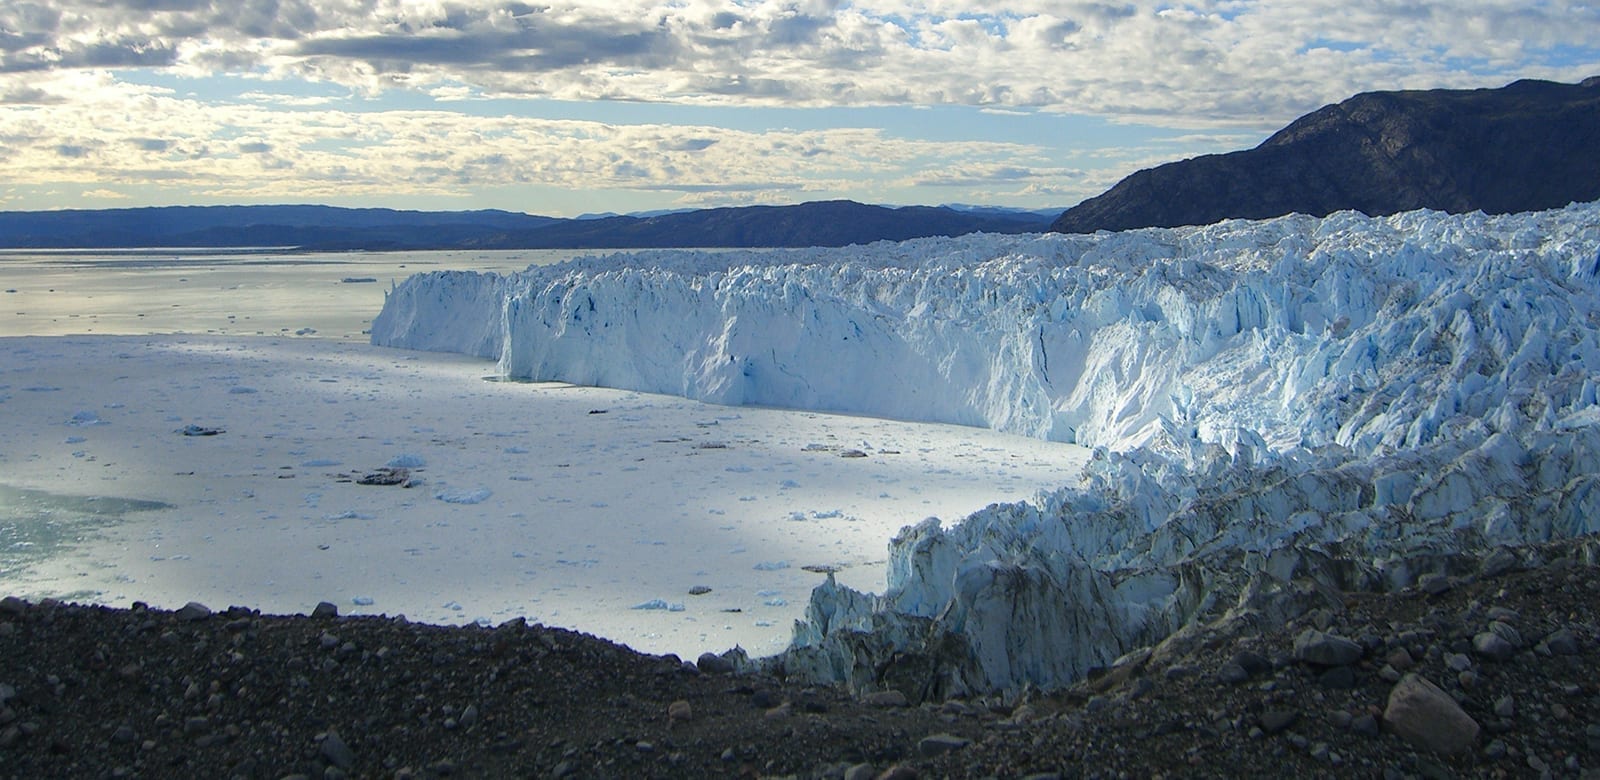 The glacier near Eqi in Greenland